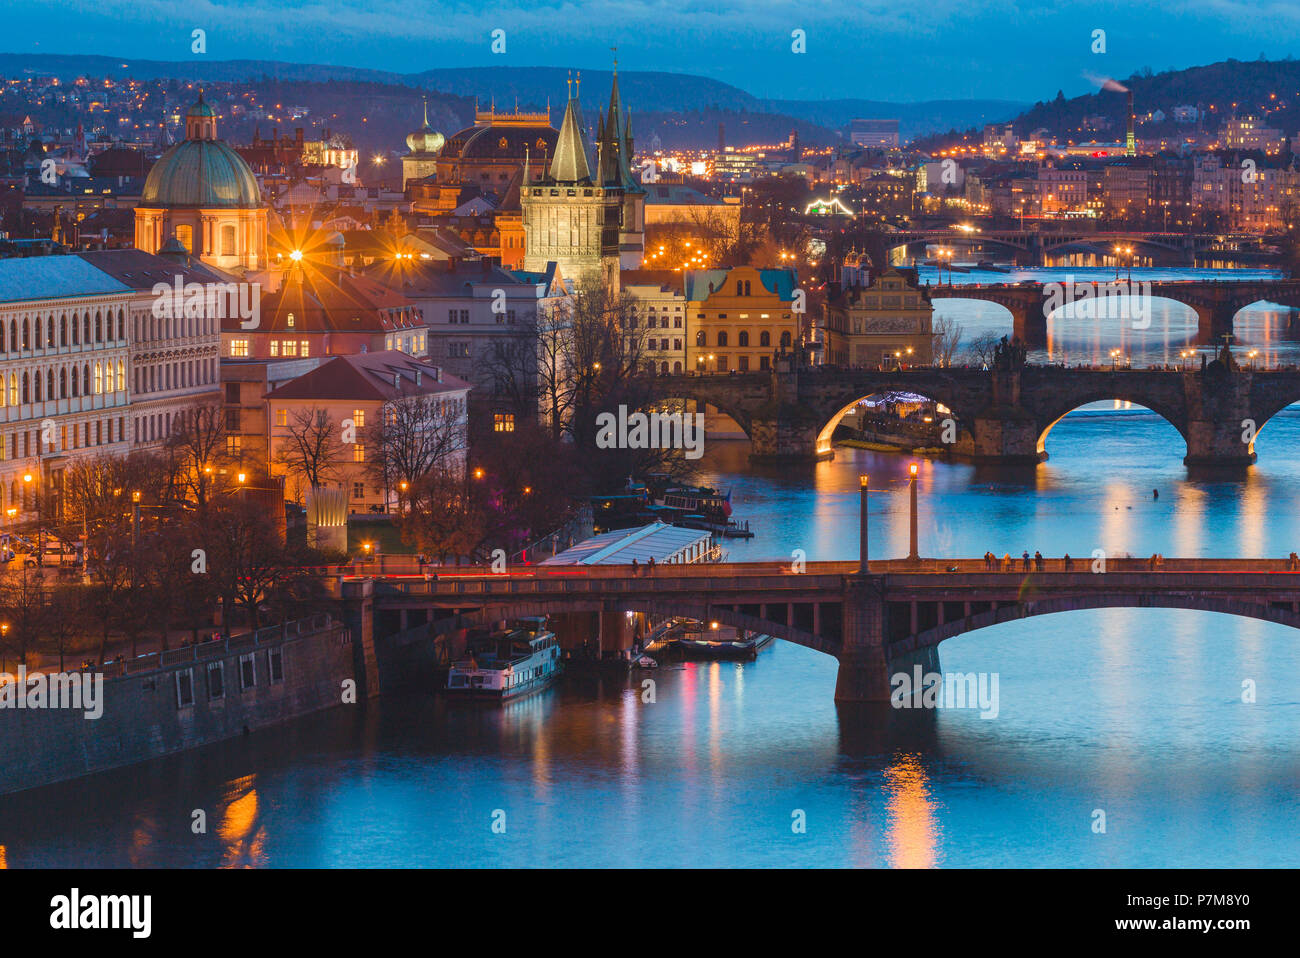 Moldau mit den Brücken, die Karlsbrücke und der Altstädter Brückenturm, Prag, Böhmen, Tschechien Stockfoto